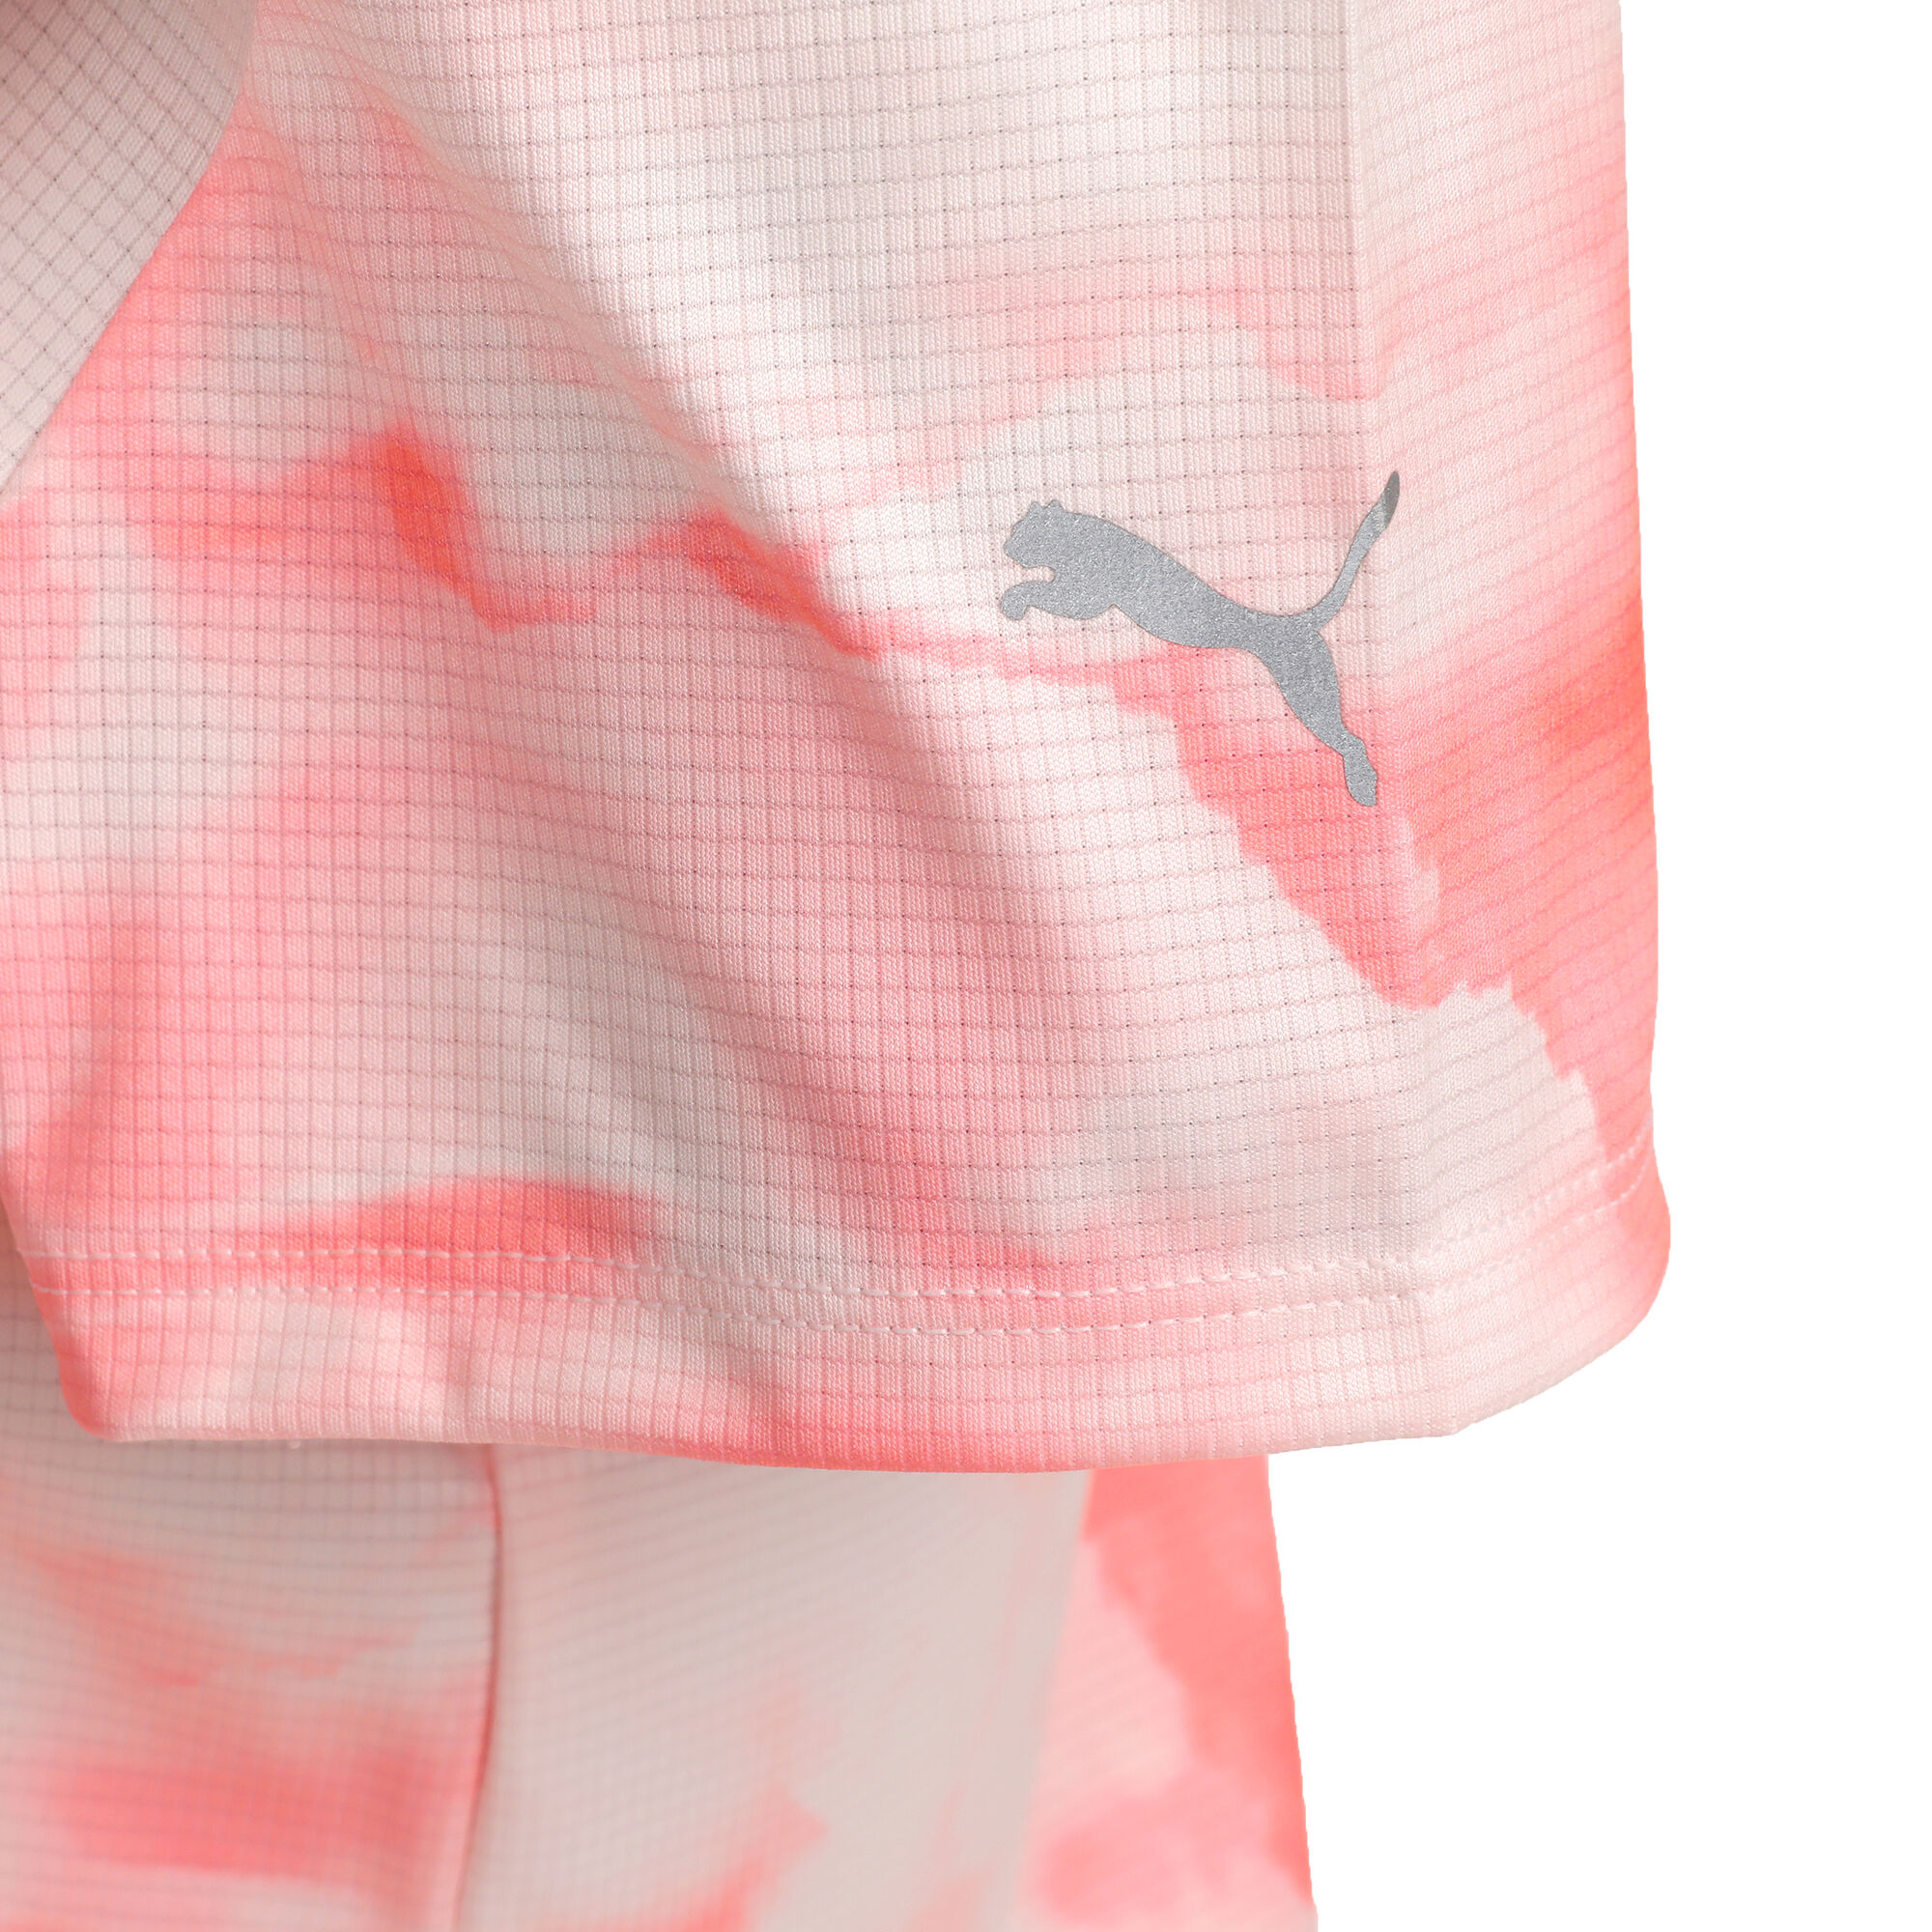 Puma Run Favorite All Over Print Laufshirt Damen Pink online kaufen |  Running Point DE